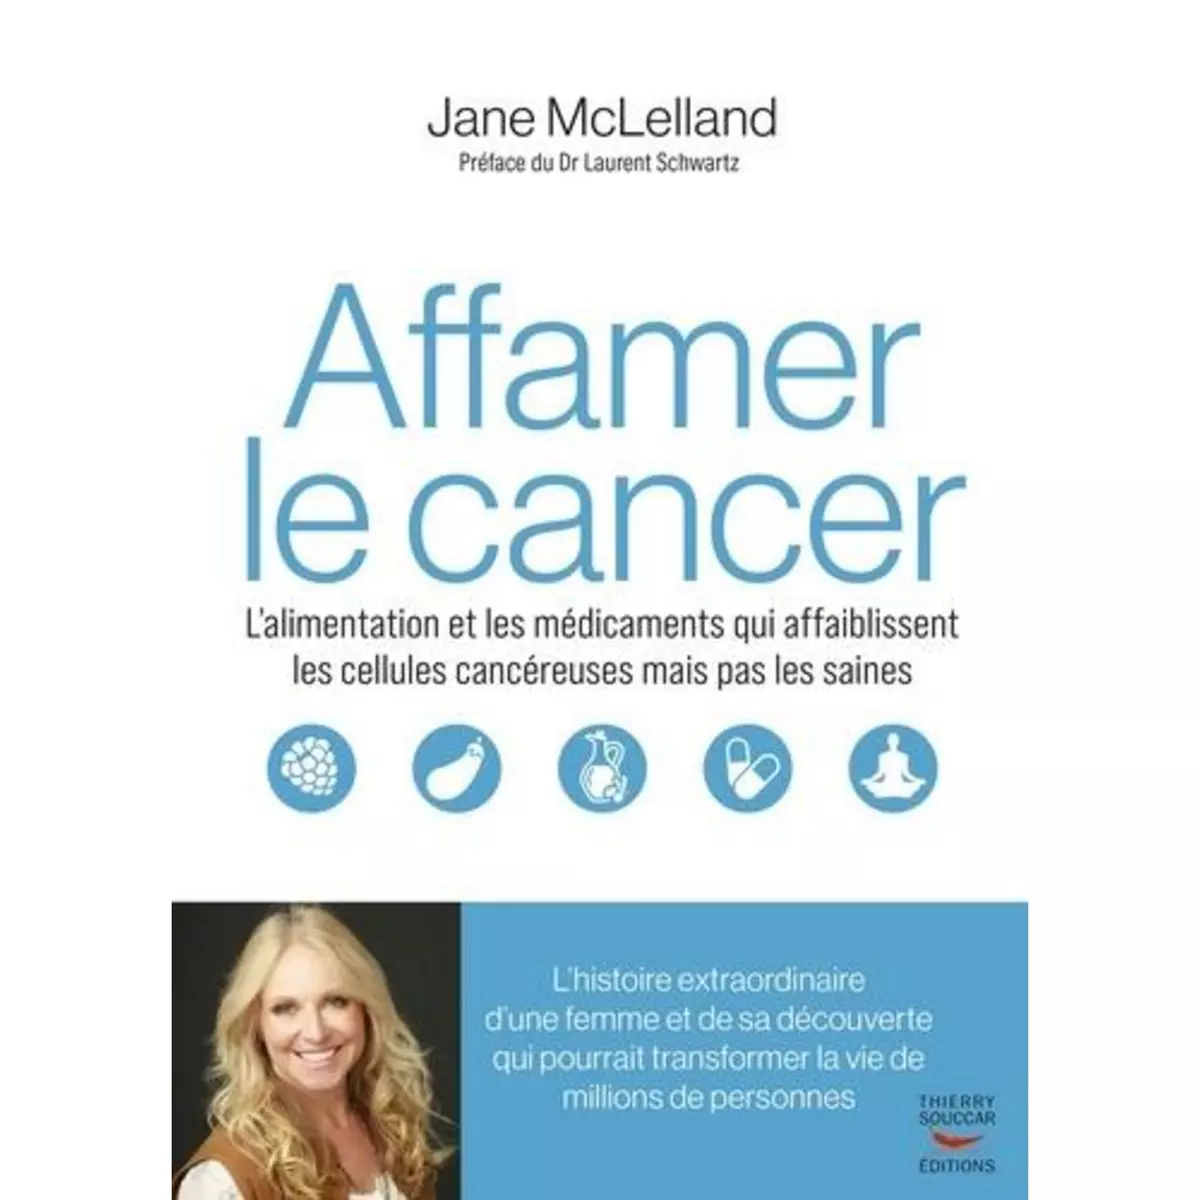  COMMENT AFFAMER LE CANCER. L'ALIMENTATION ET LES MEDICAMENTS QUI AFFAIBLISSENT LES CELLULES CANCEREUSES EN EPARGNANT LES SAINES, McLelland Jane